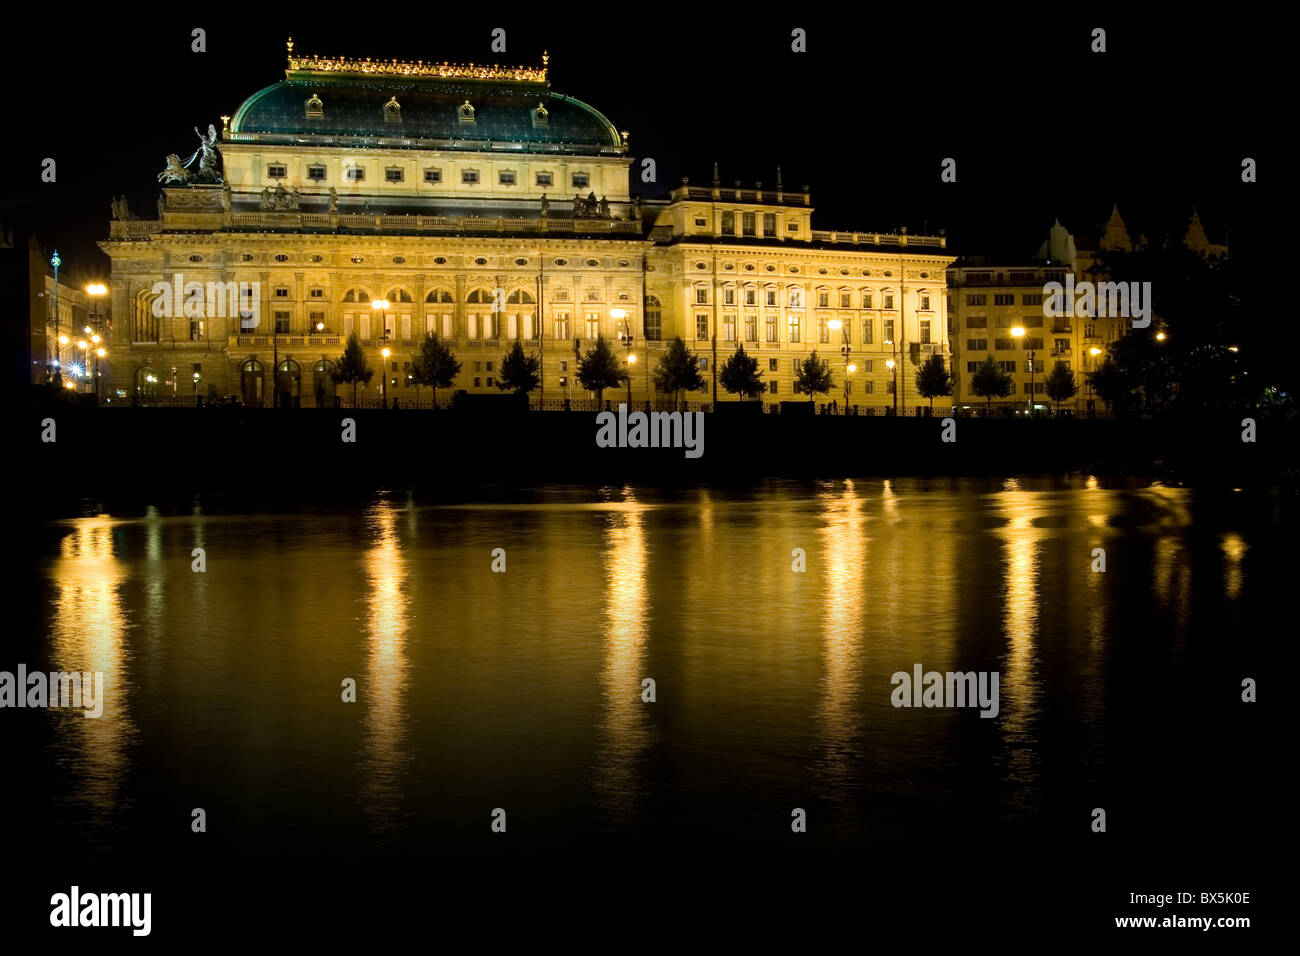 Tschechisches Nationaltheater bei Nacht - Prag Stockfoto